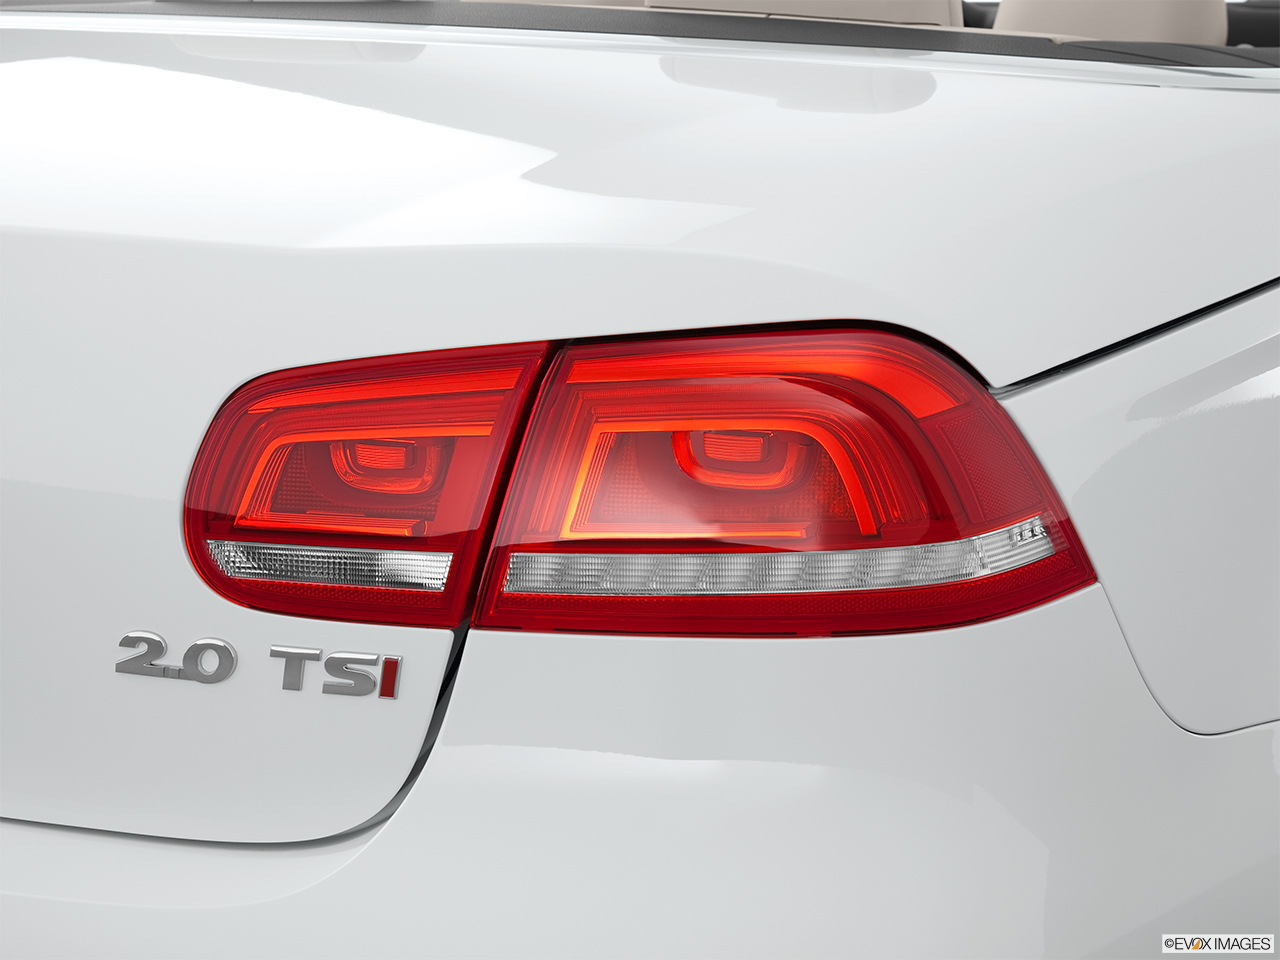 2013 Volkswagen Eos Lux Passenger Side Taillight. 